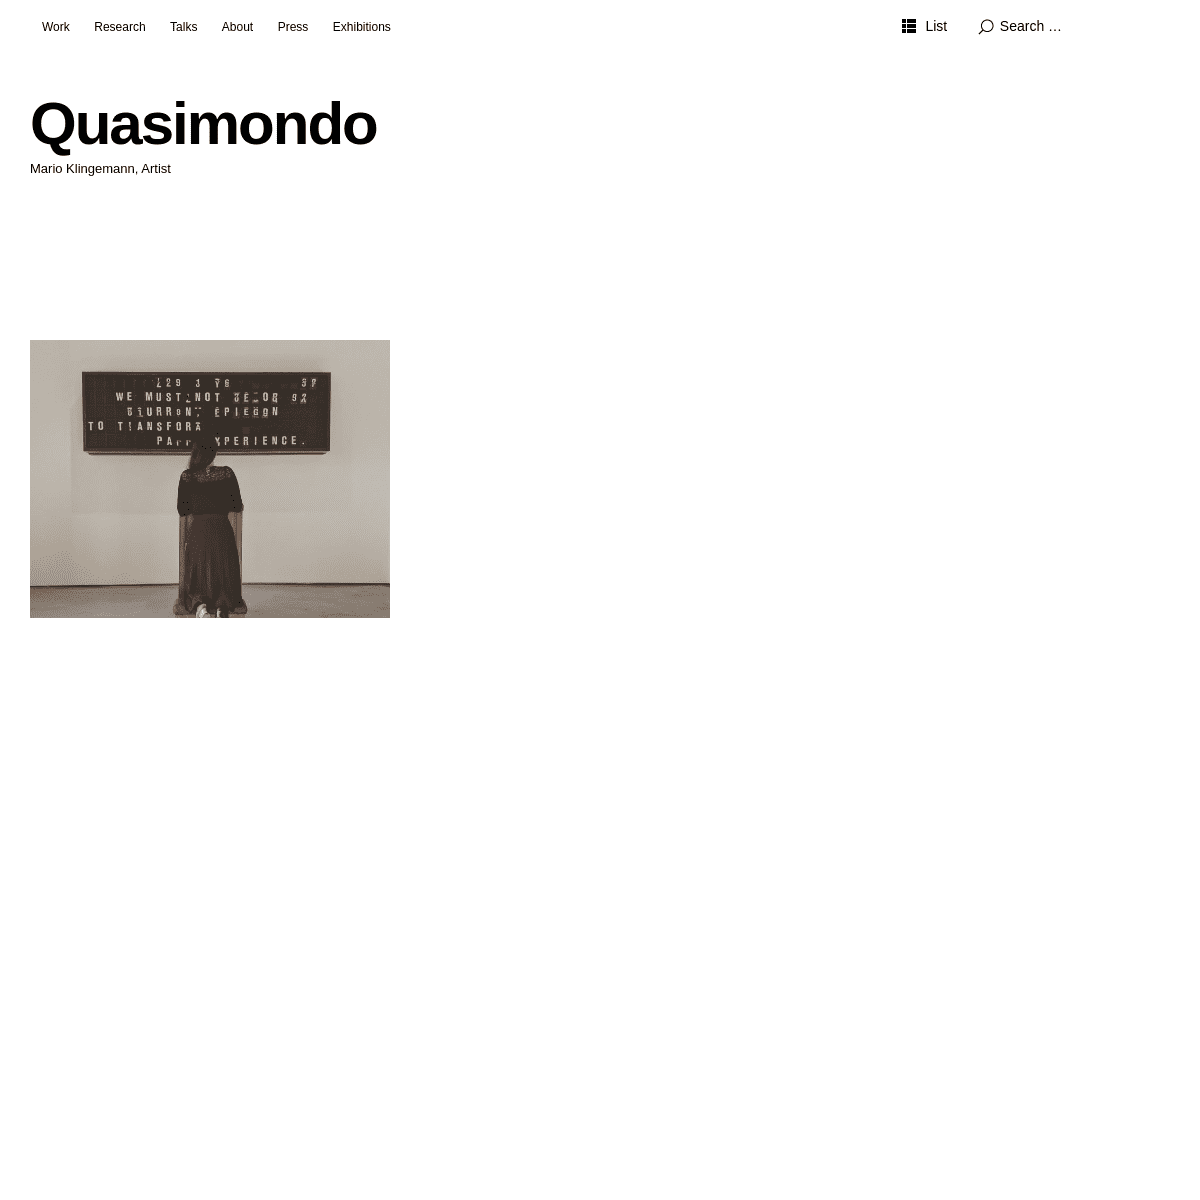 A complete backup of https://quasimondo.com